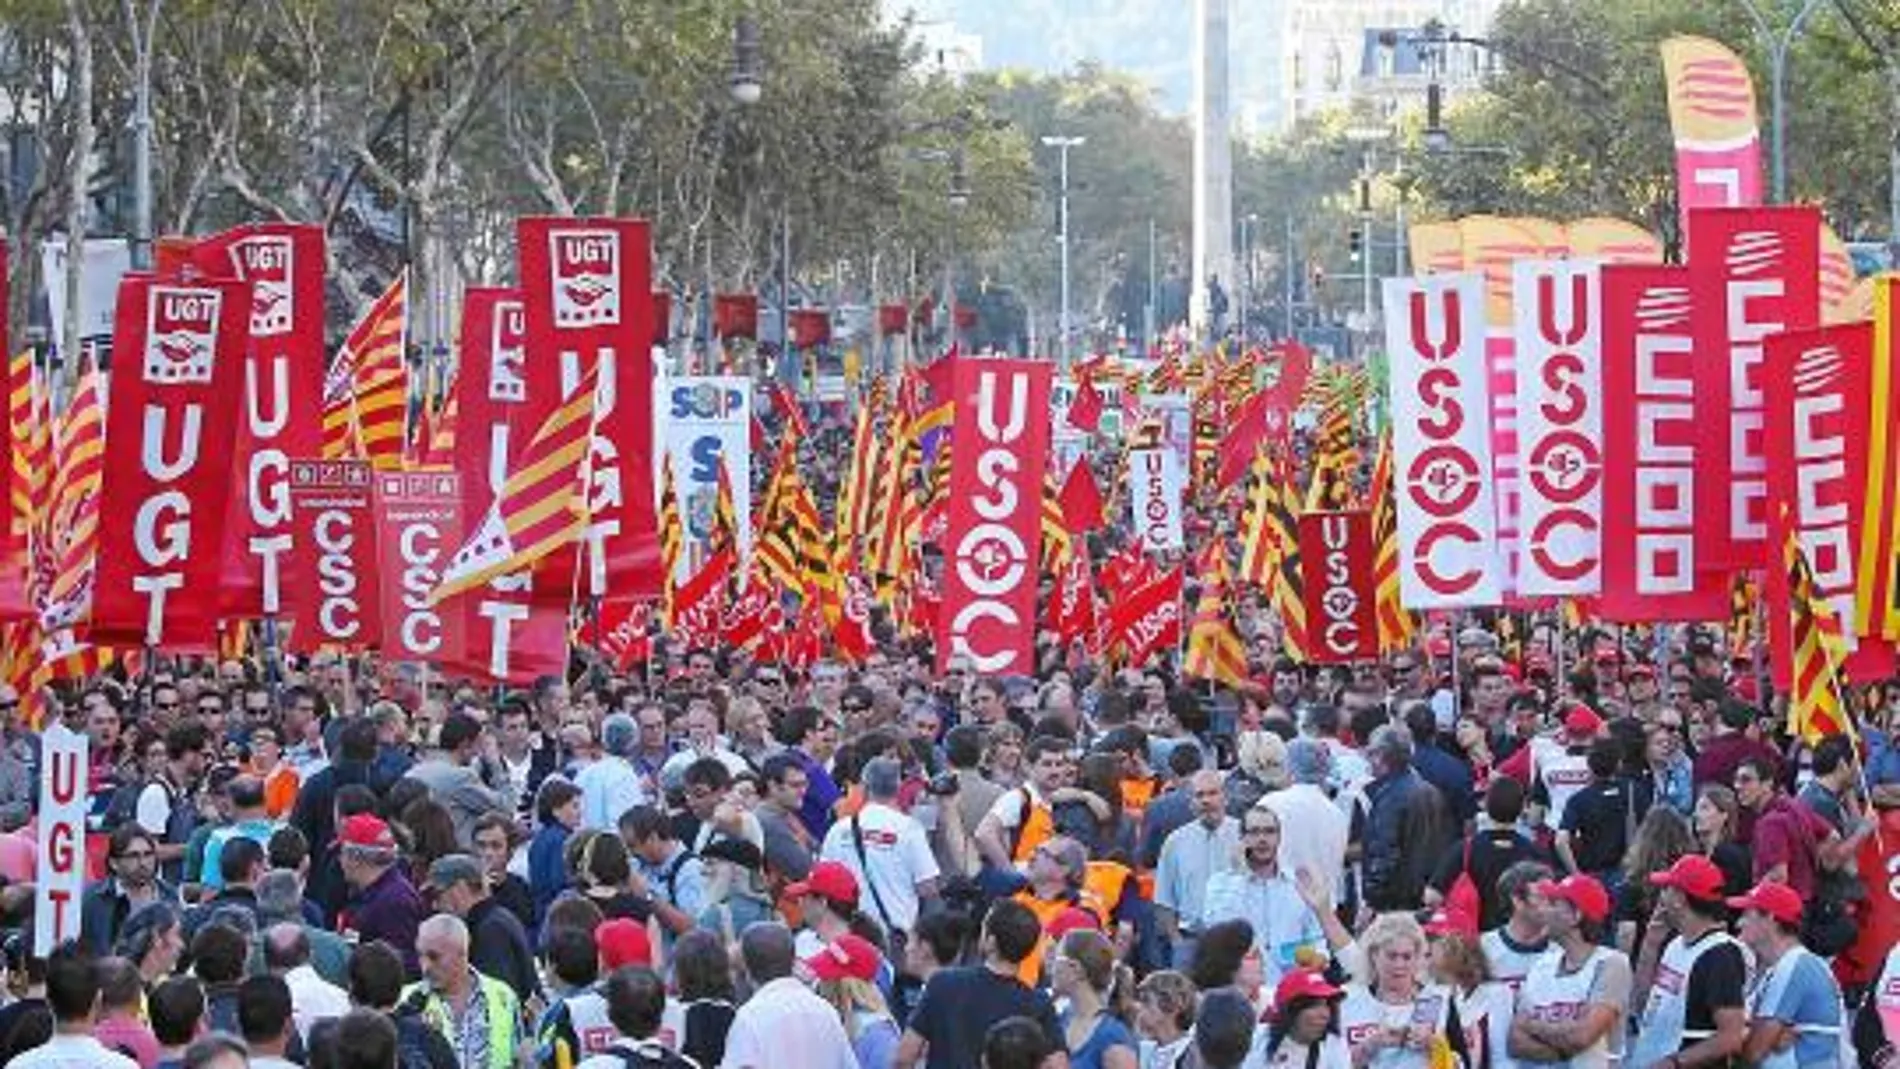 Esta imagen puede ser una tónica habitual en los próximos meses en Cataluña